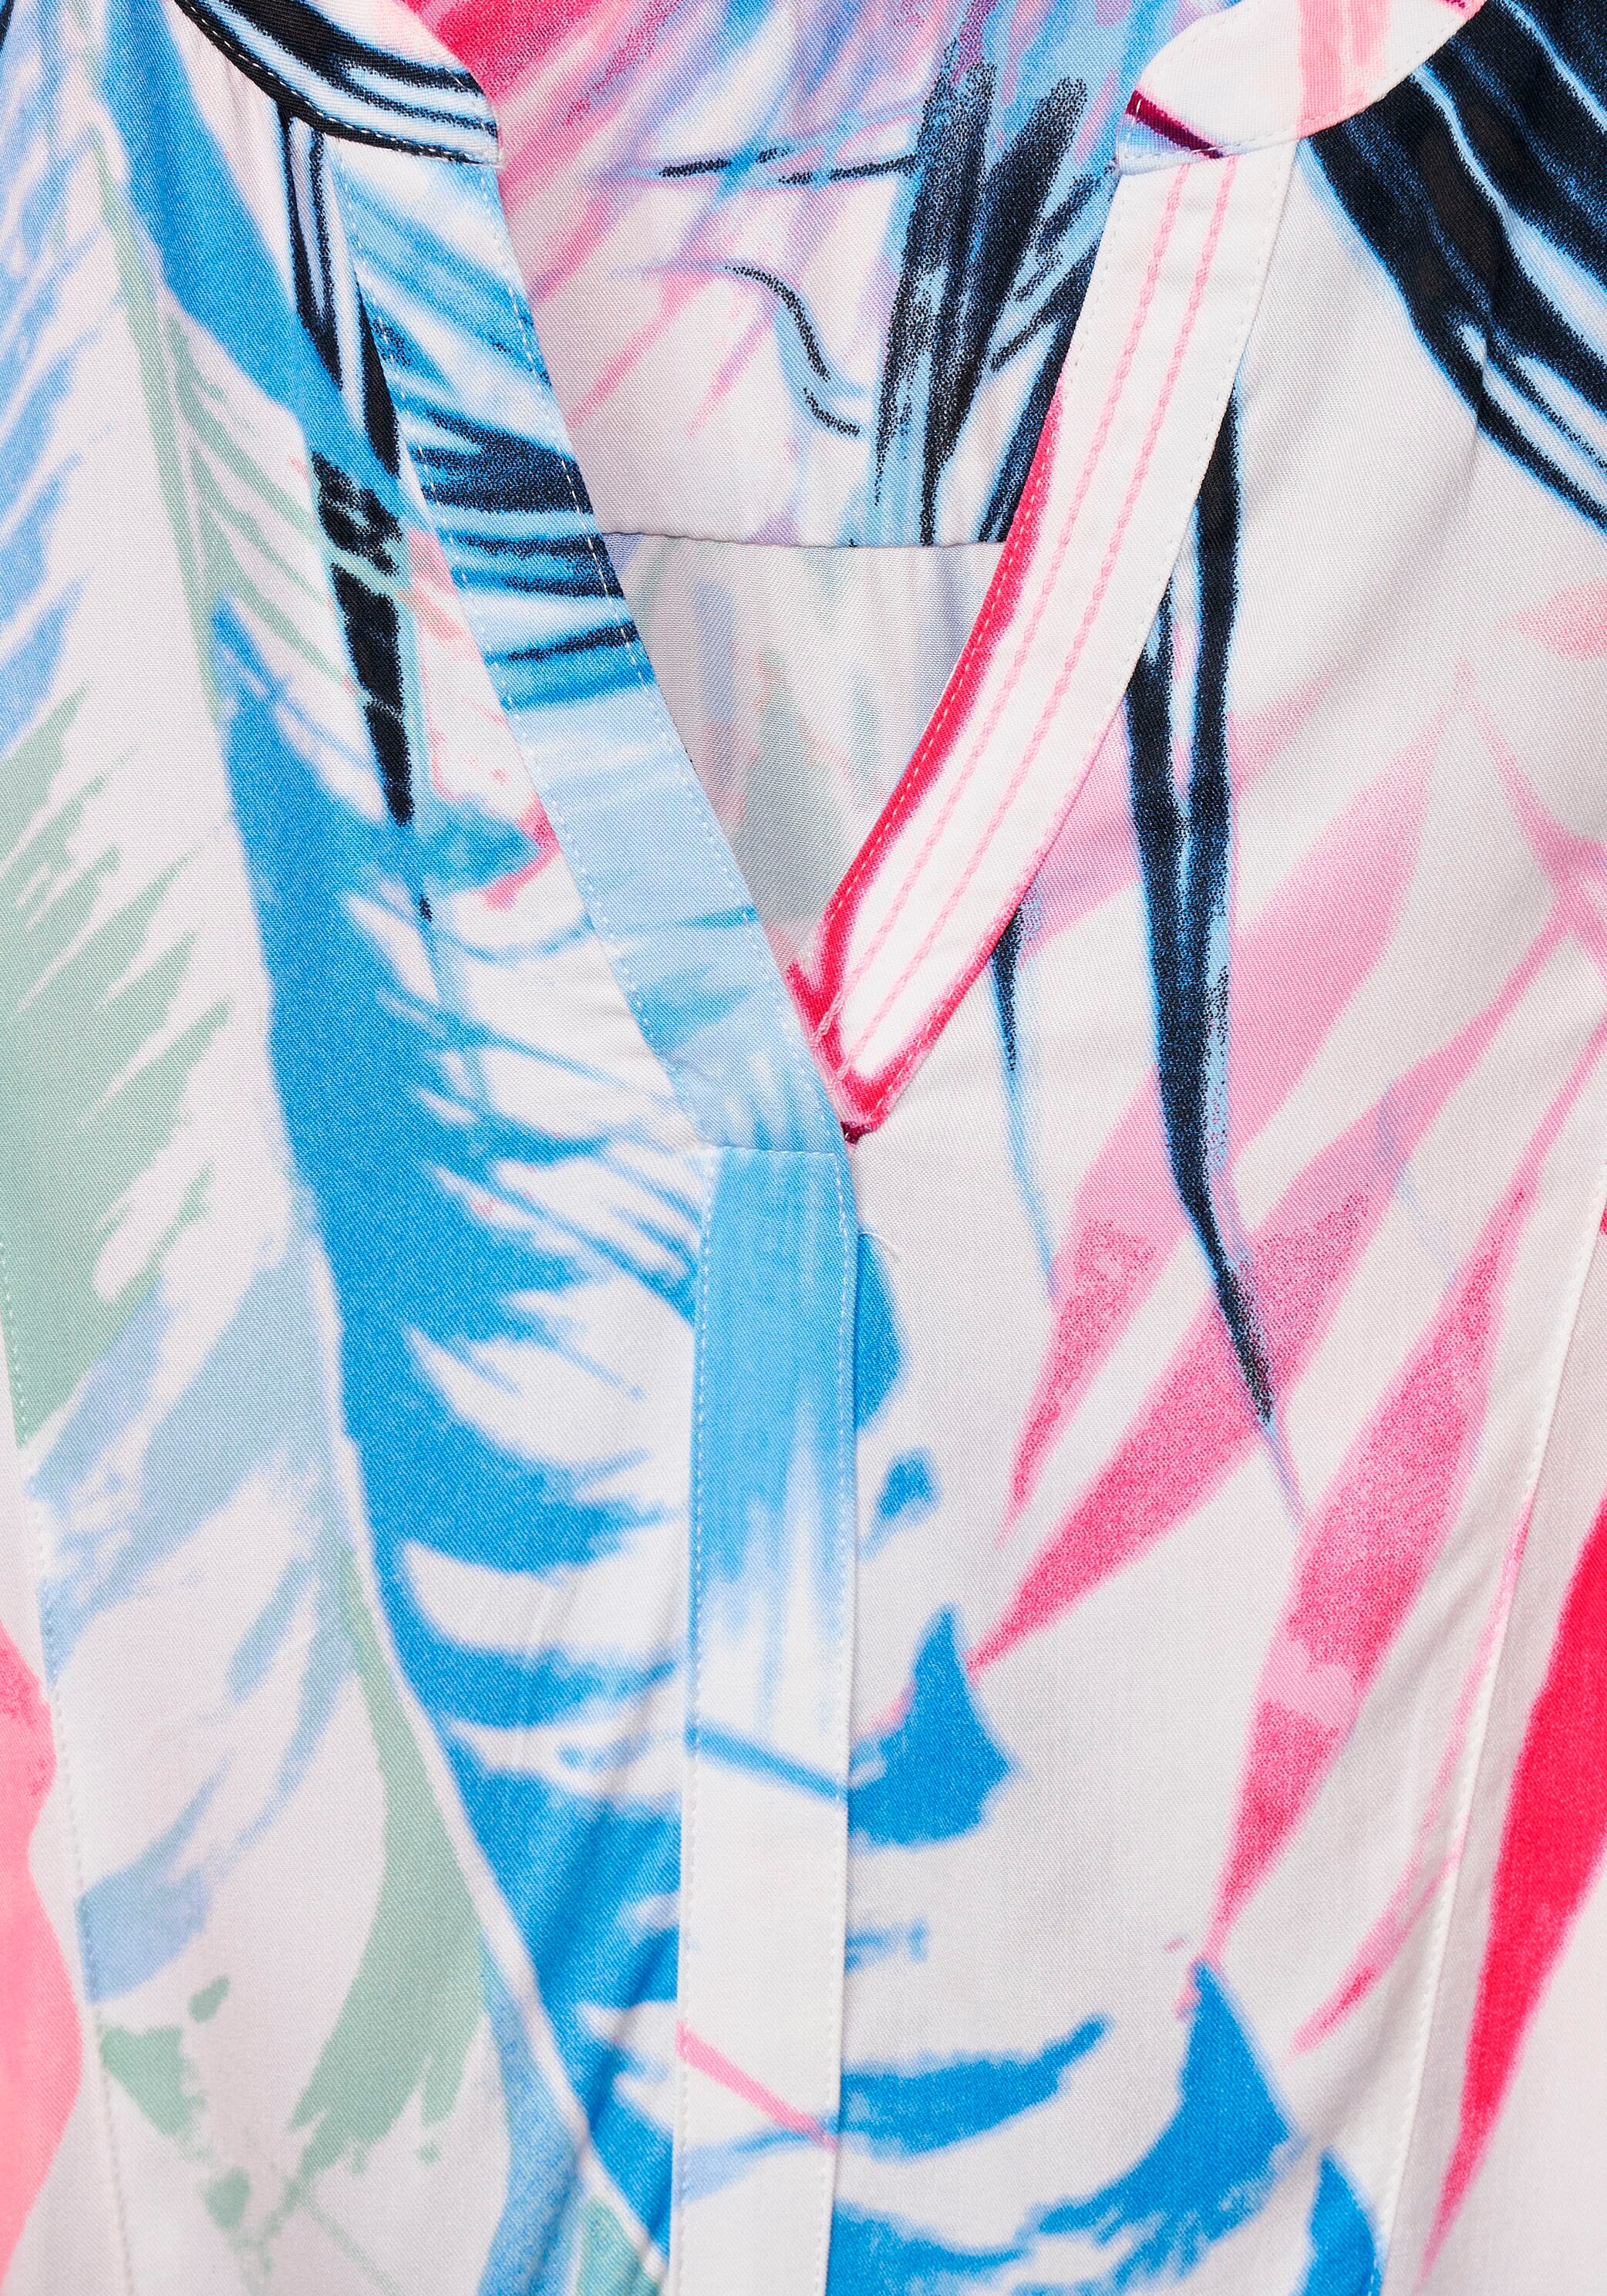 Cecil Druckkleid »TOS Print Dress«, in trendiger Print Optik